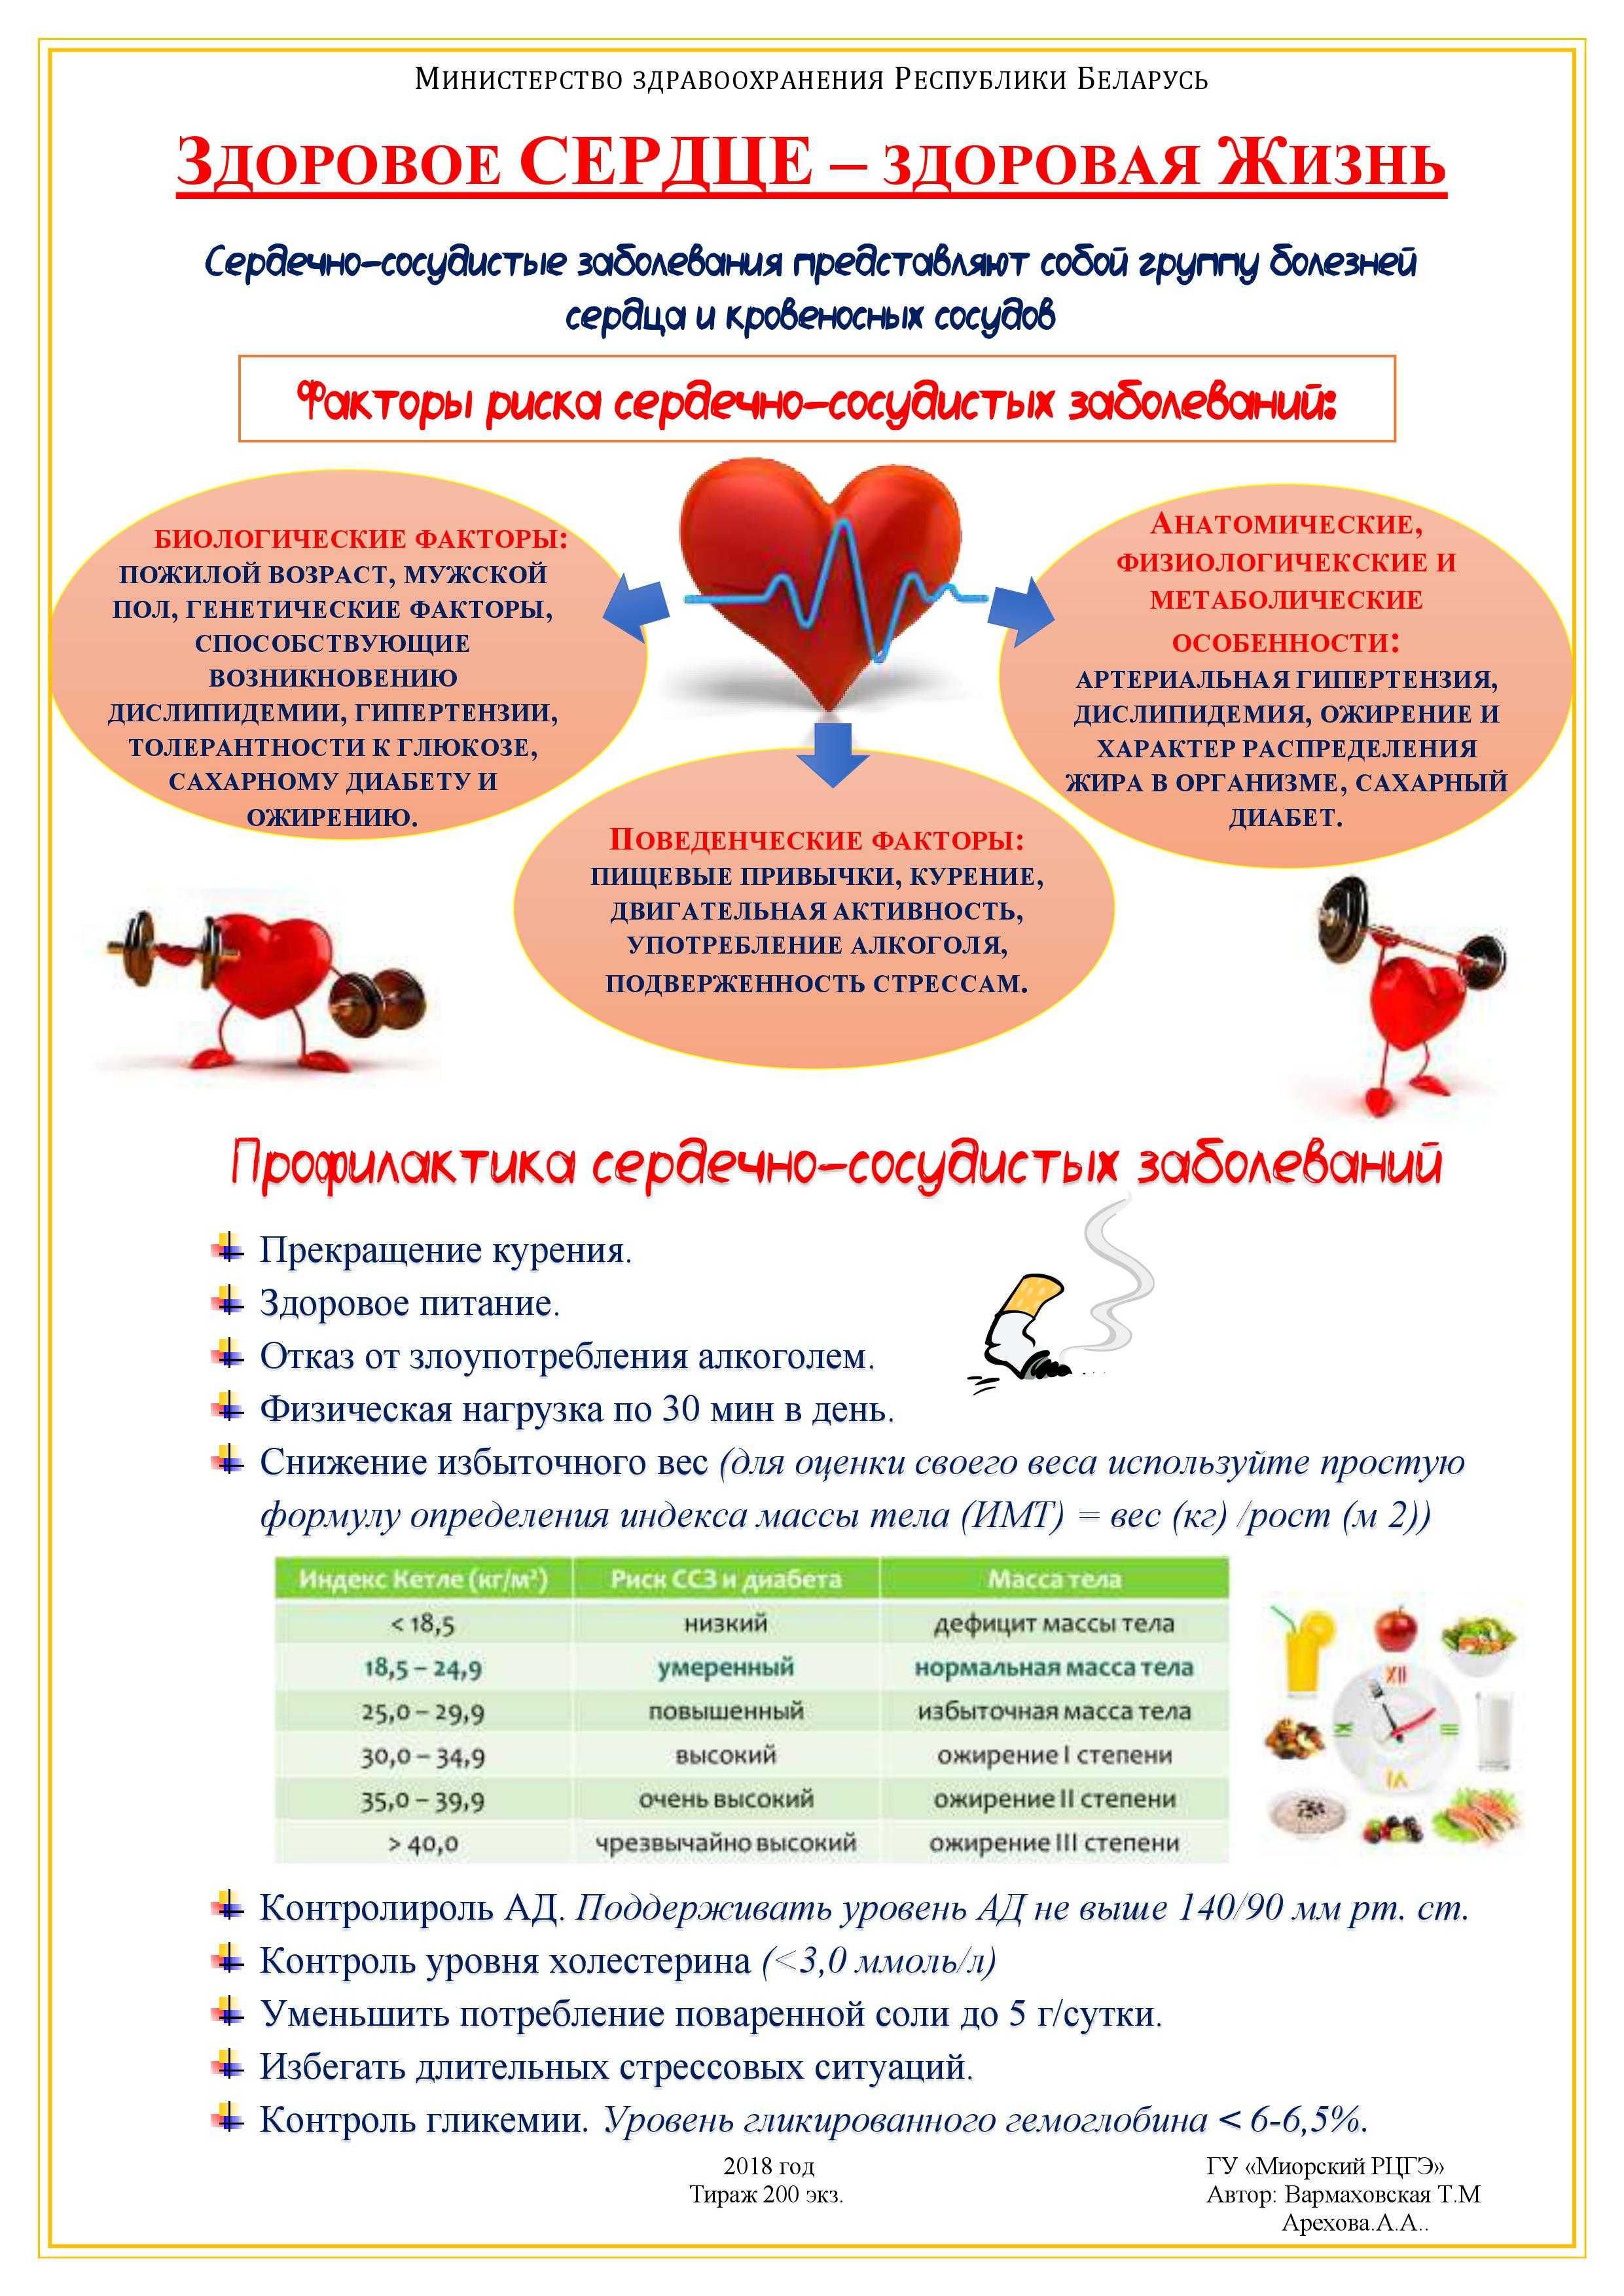 Физкультура для всех: для детей и взрослых  
» при заболеваниях сердечно-сосудистой системы   

 » лфк при заболеваниях сердечно-сосудистой системы